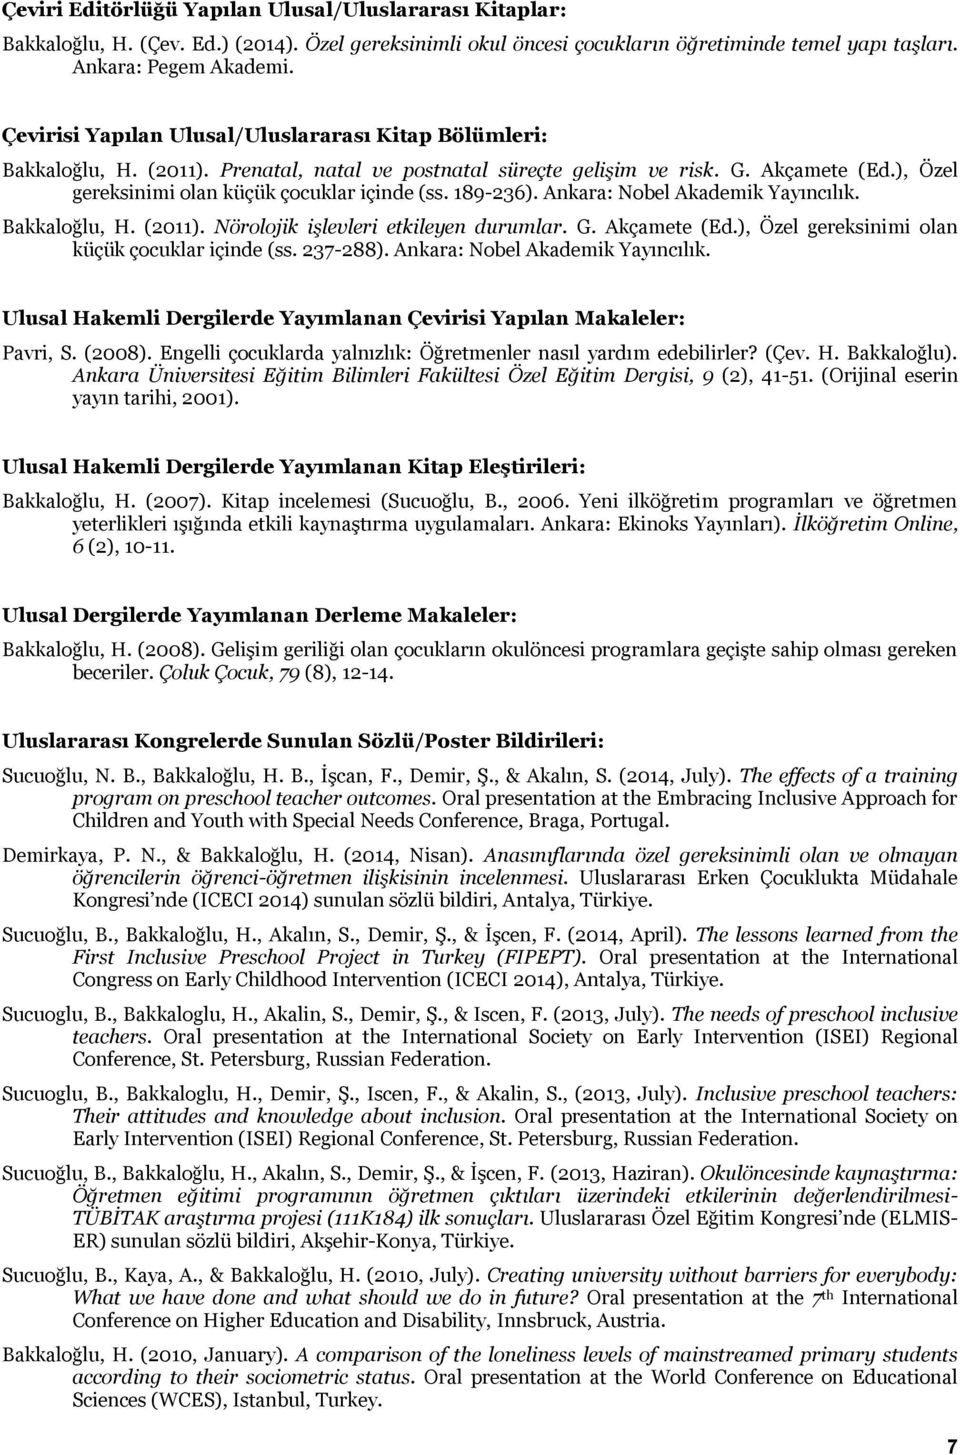 189-236). Ankara: Nobel Akademik Yayıncılık. Bakkaloğlu, H. (2011). Nörolojik işlevleri etkileyen durumlar. G. Akçamete (Ed.), Özel gereksinimi olan küçük çocuklar içinde (ss. 237-288).